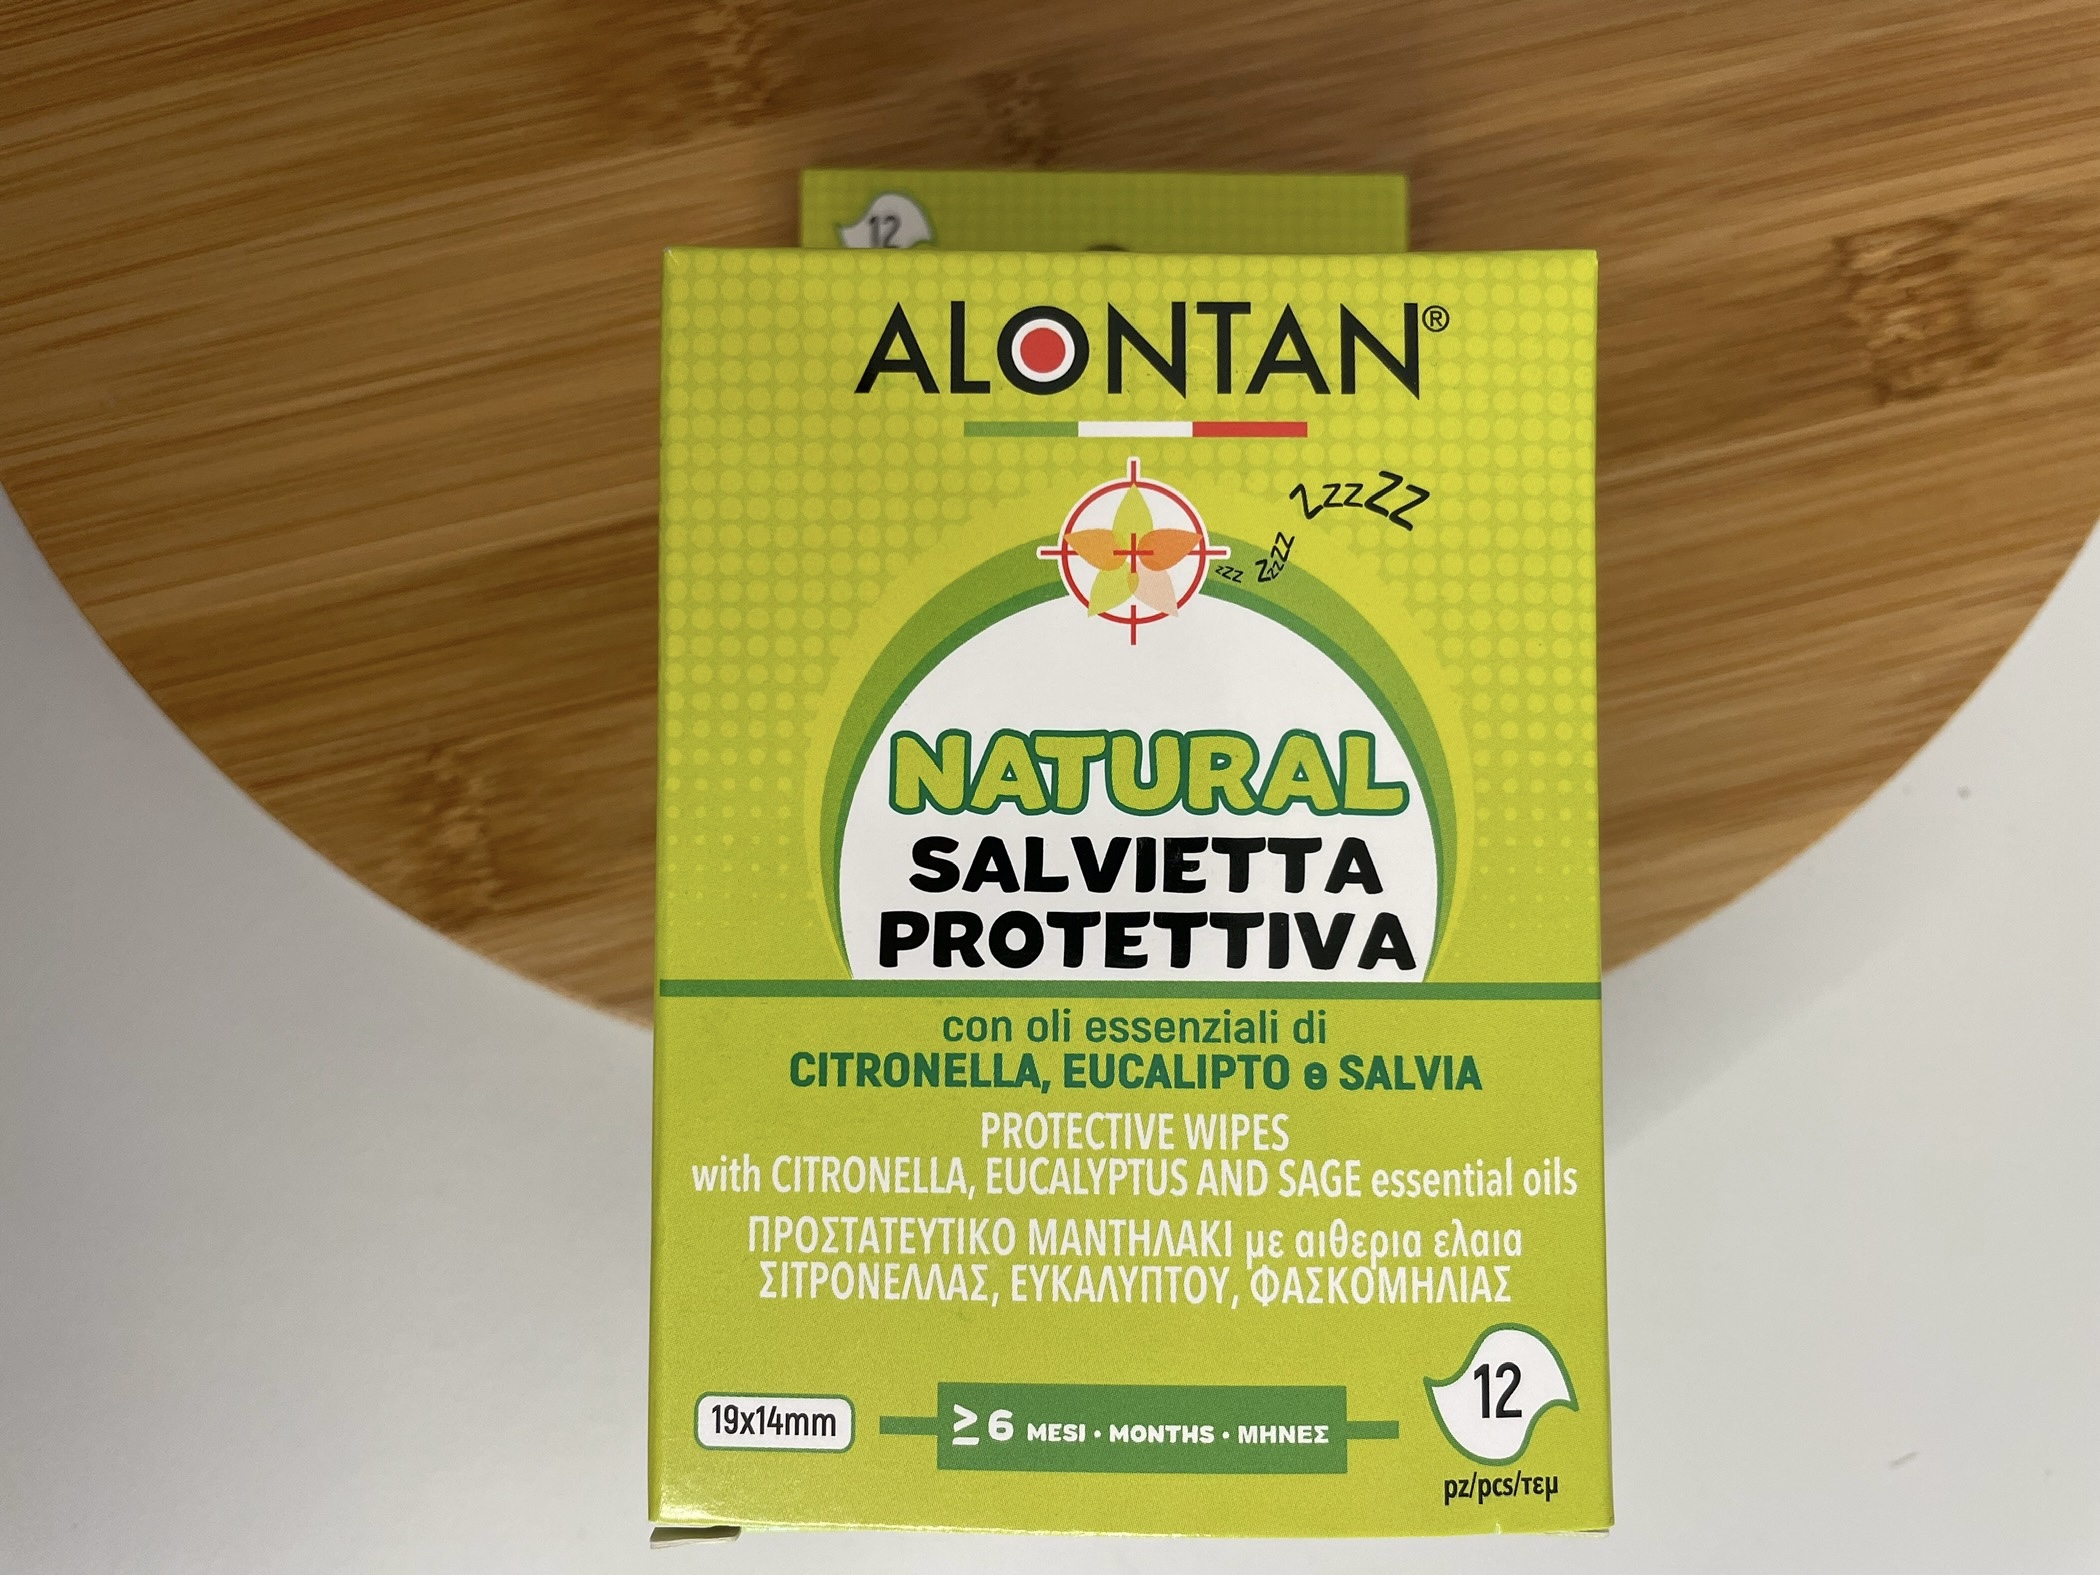 Alontan: Natural Salvietta Protettiva